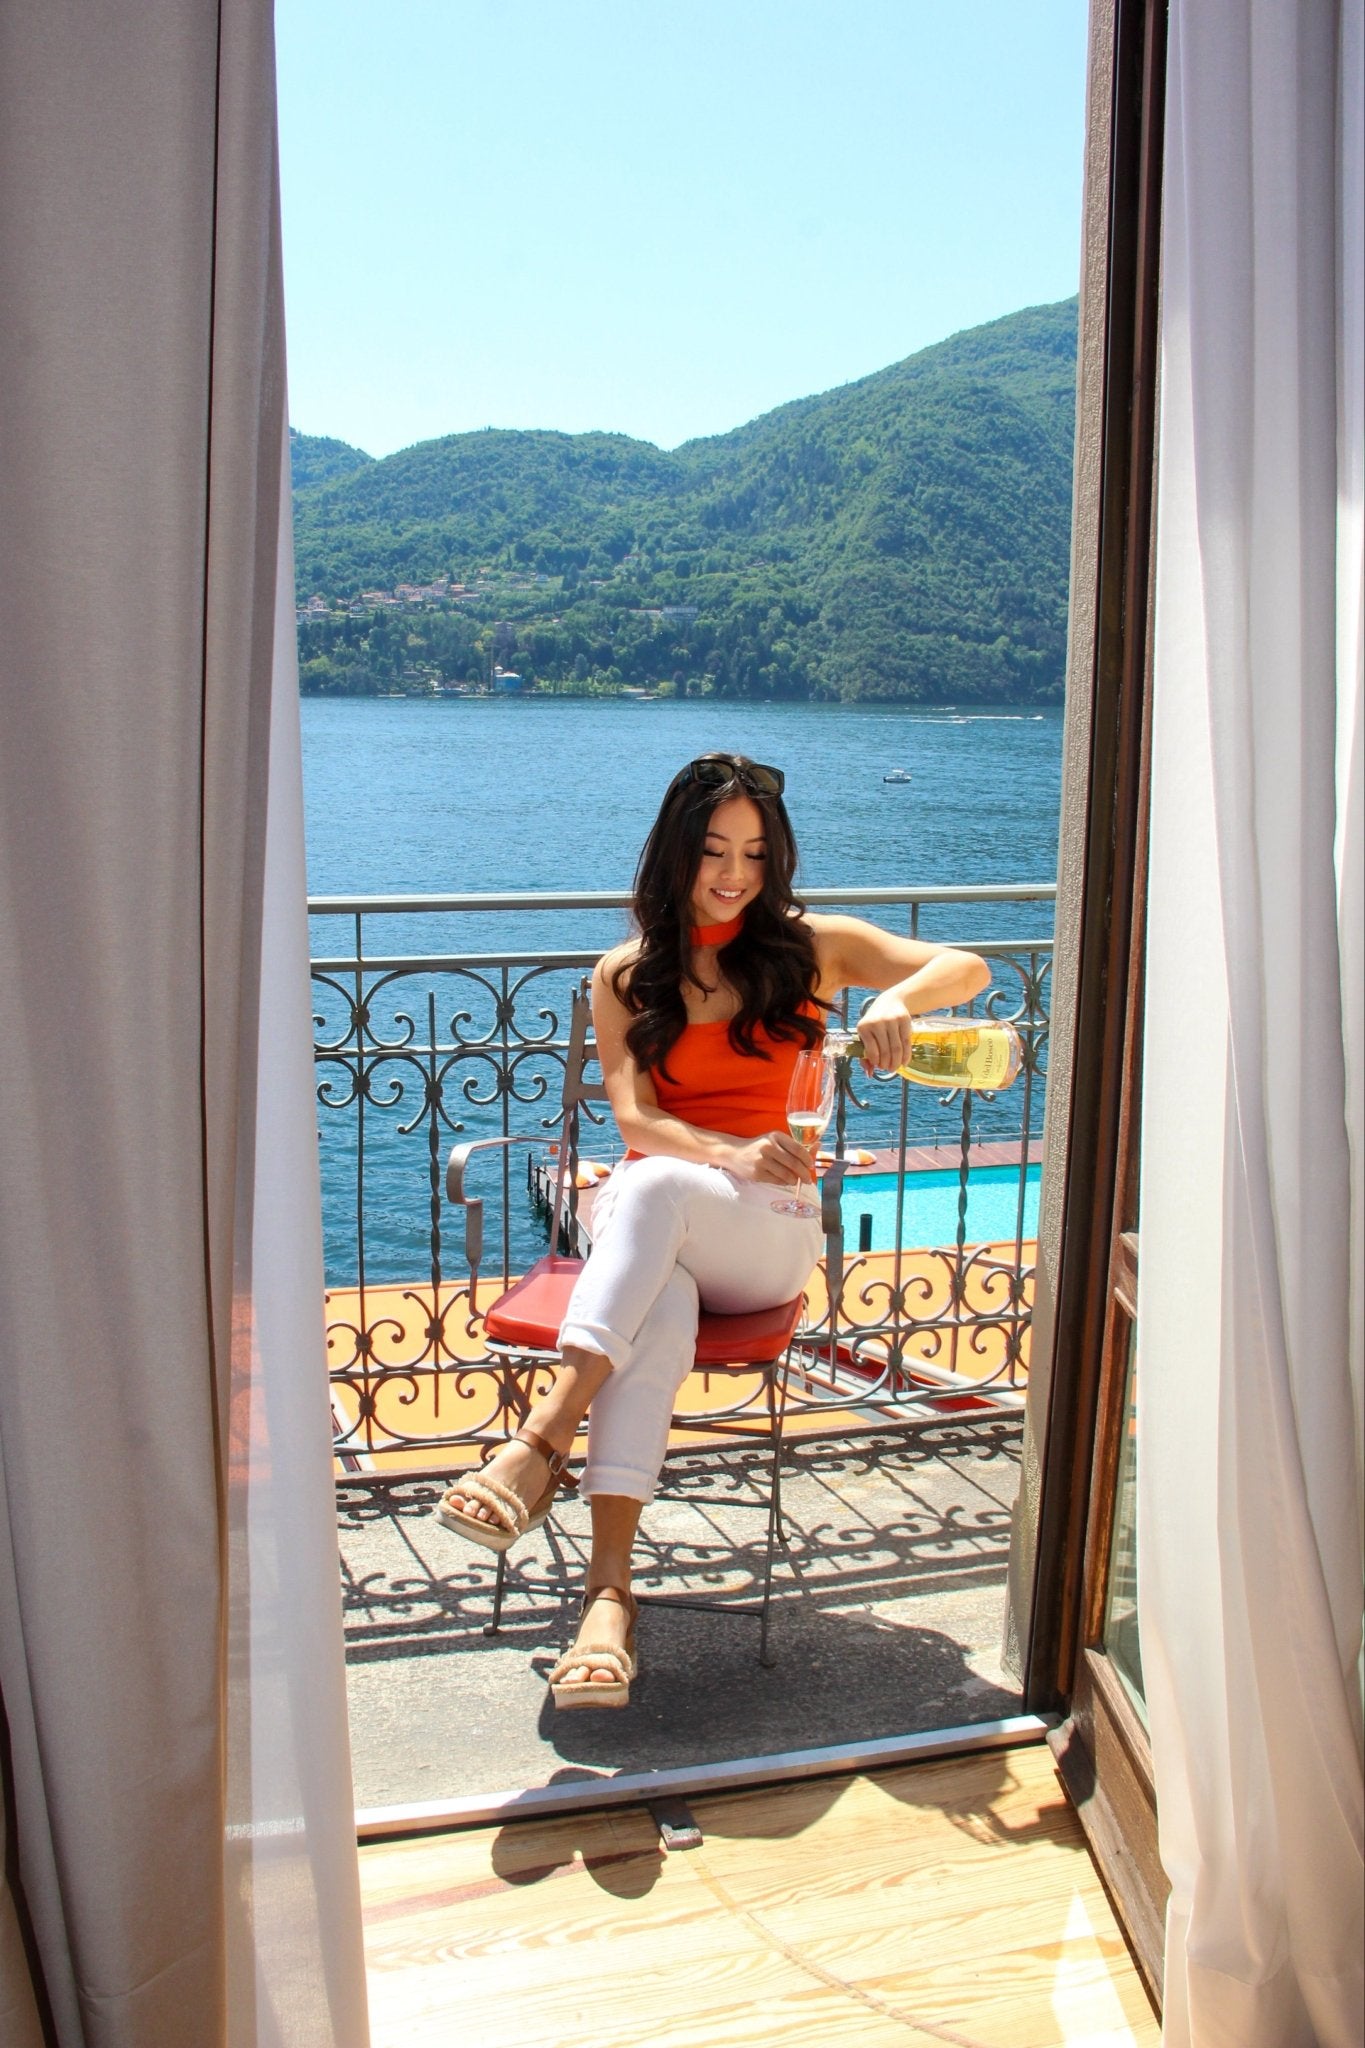 Honeymoon Photoshoot at Grand Hotel Tremezzo - Lake Como Photographer - FRAQAIR